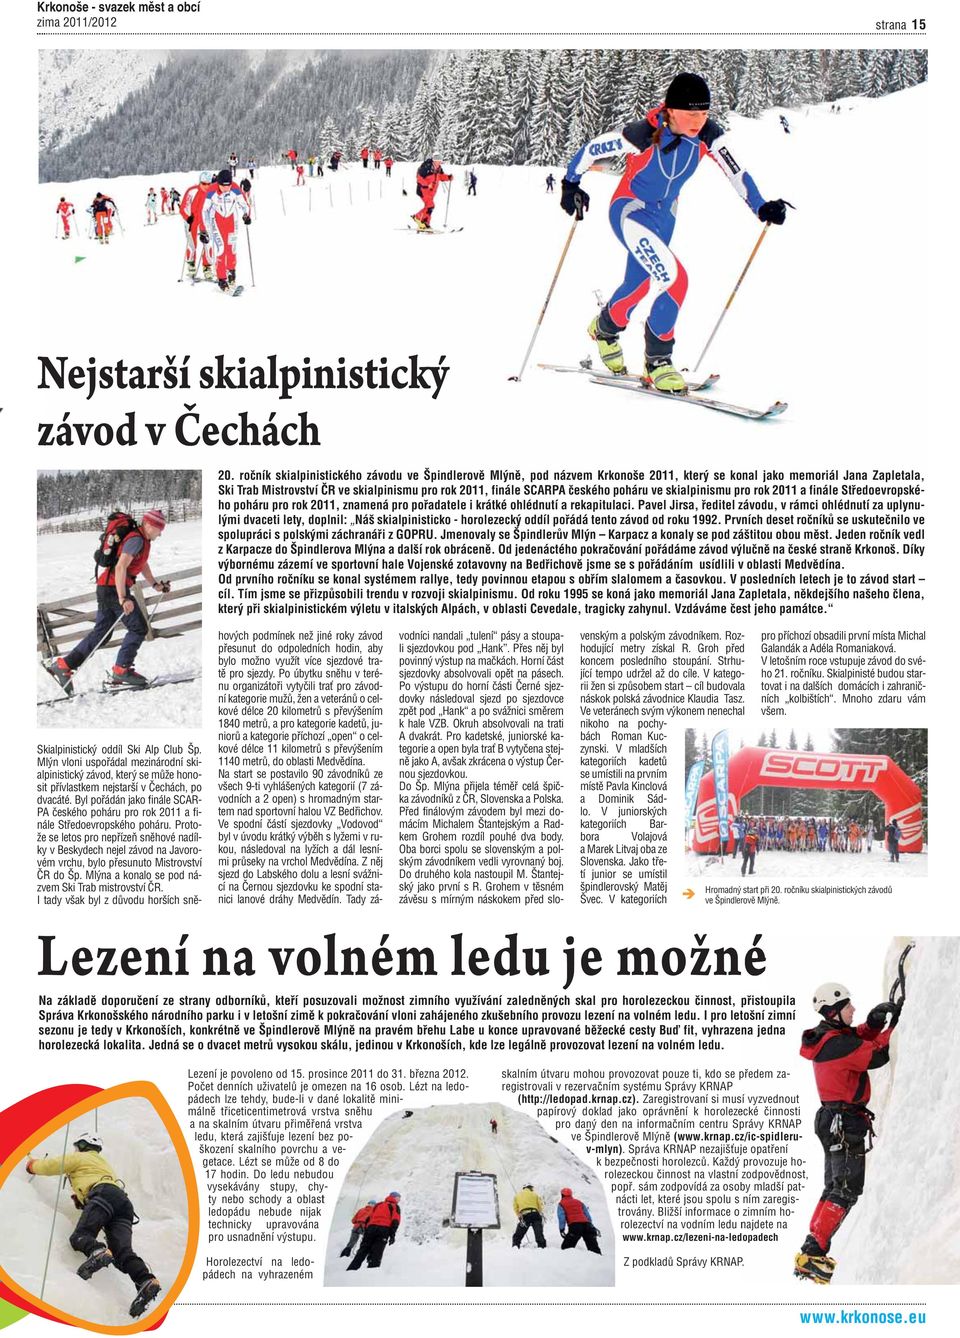 českého poháru ve skialpinismu pro rok 2011 a finále Středoevropského poháru pro rok 2011, znamená pro pořadatele i krátké ohlédnutí a rekapitulaci.